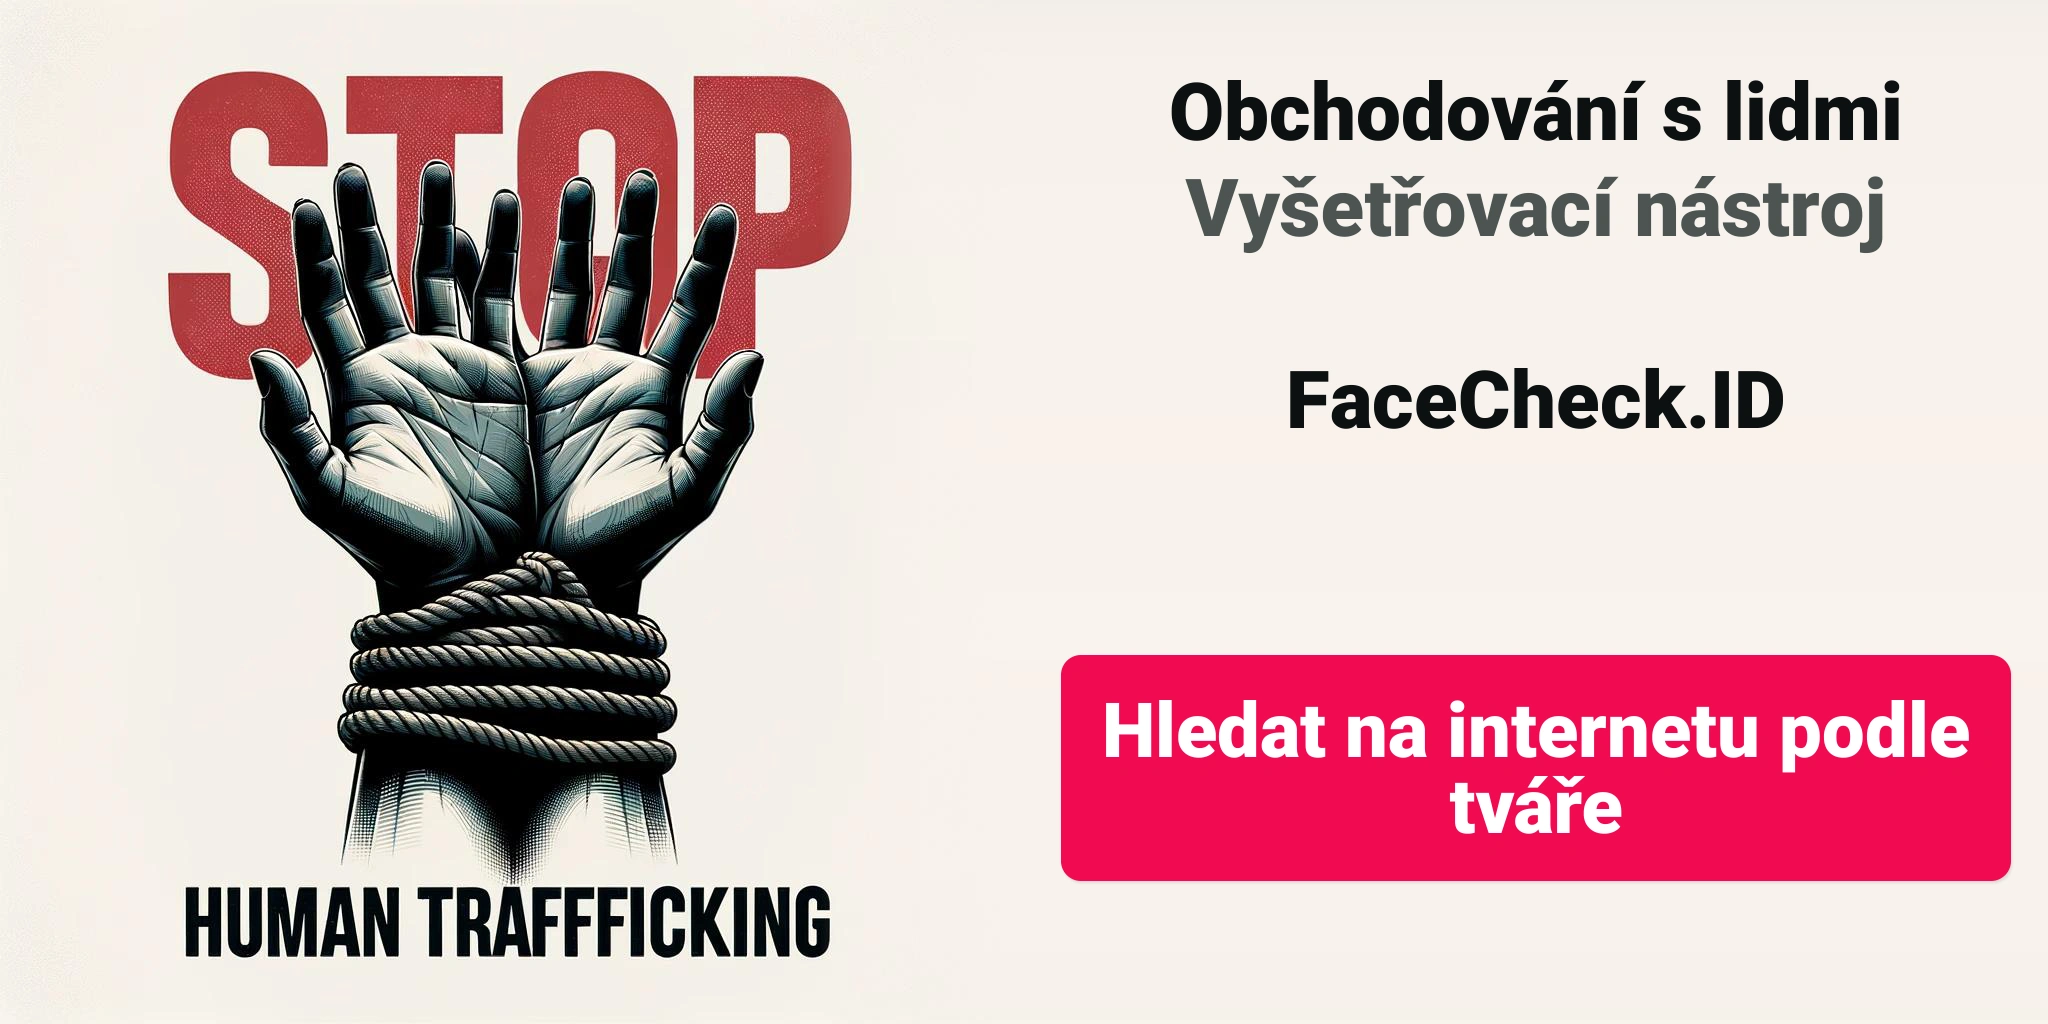 Obchodování s lidmi Vyšetřovací nástrojFaceCheck.ID Hledat na internetu podle tváře